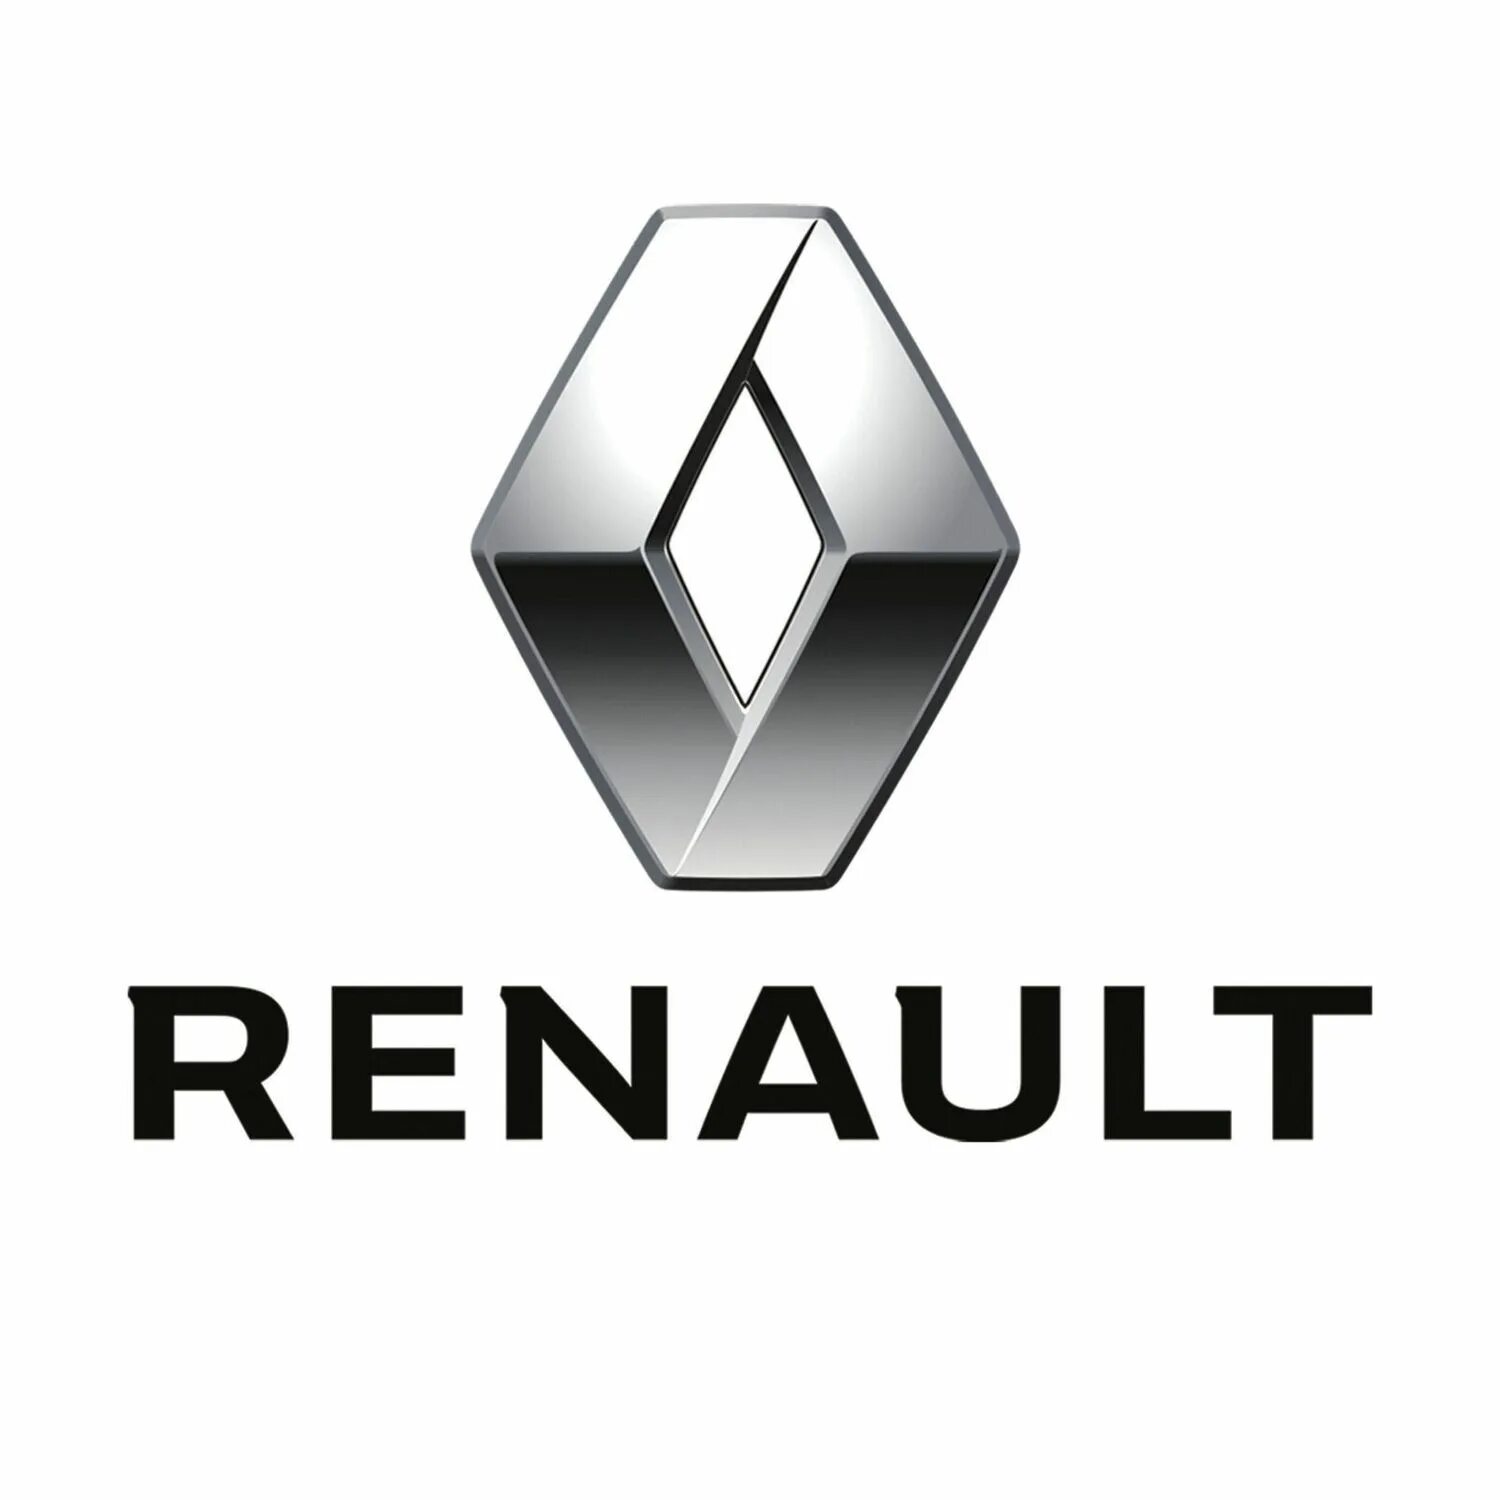 63 78 4. Renault logo. Знак Рено Логан. Логотип марки Рено. Renault логотип новый.